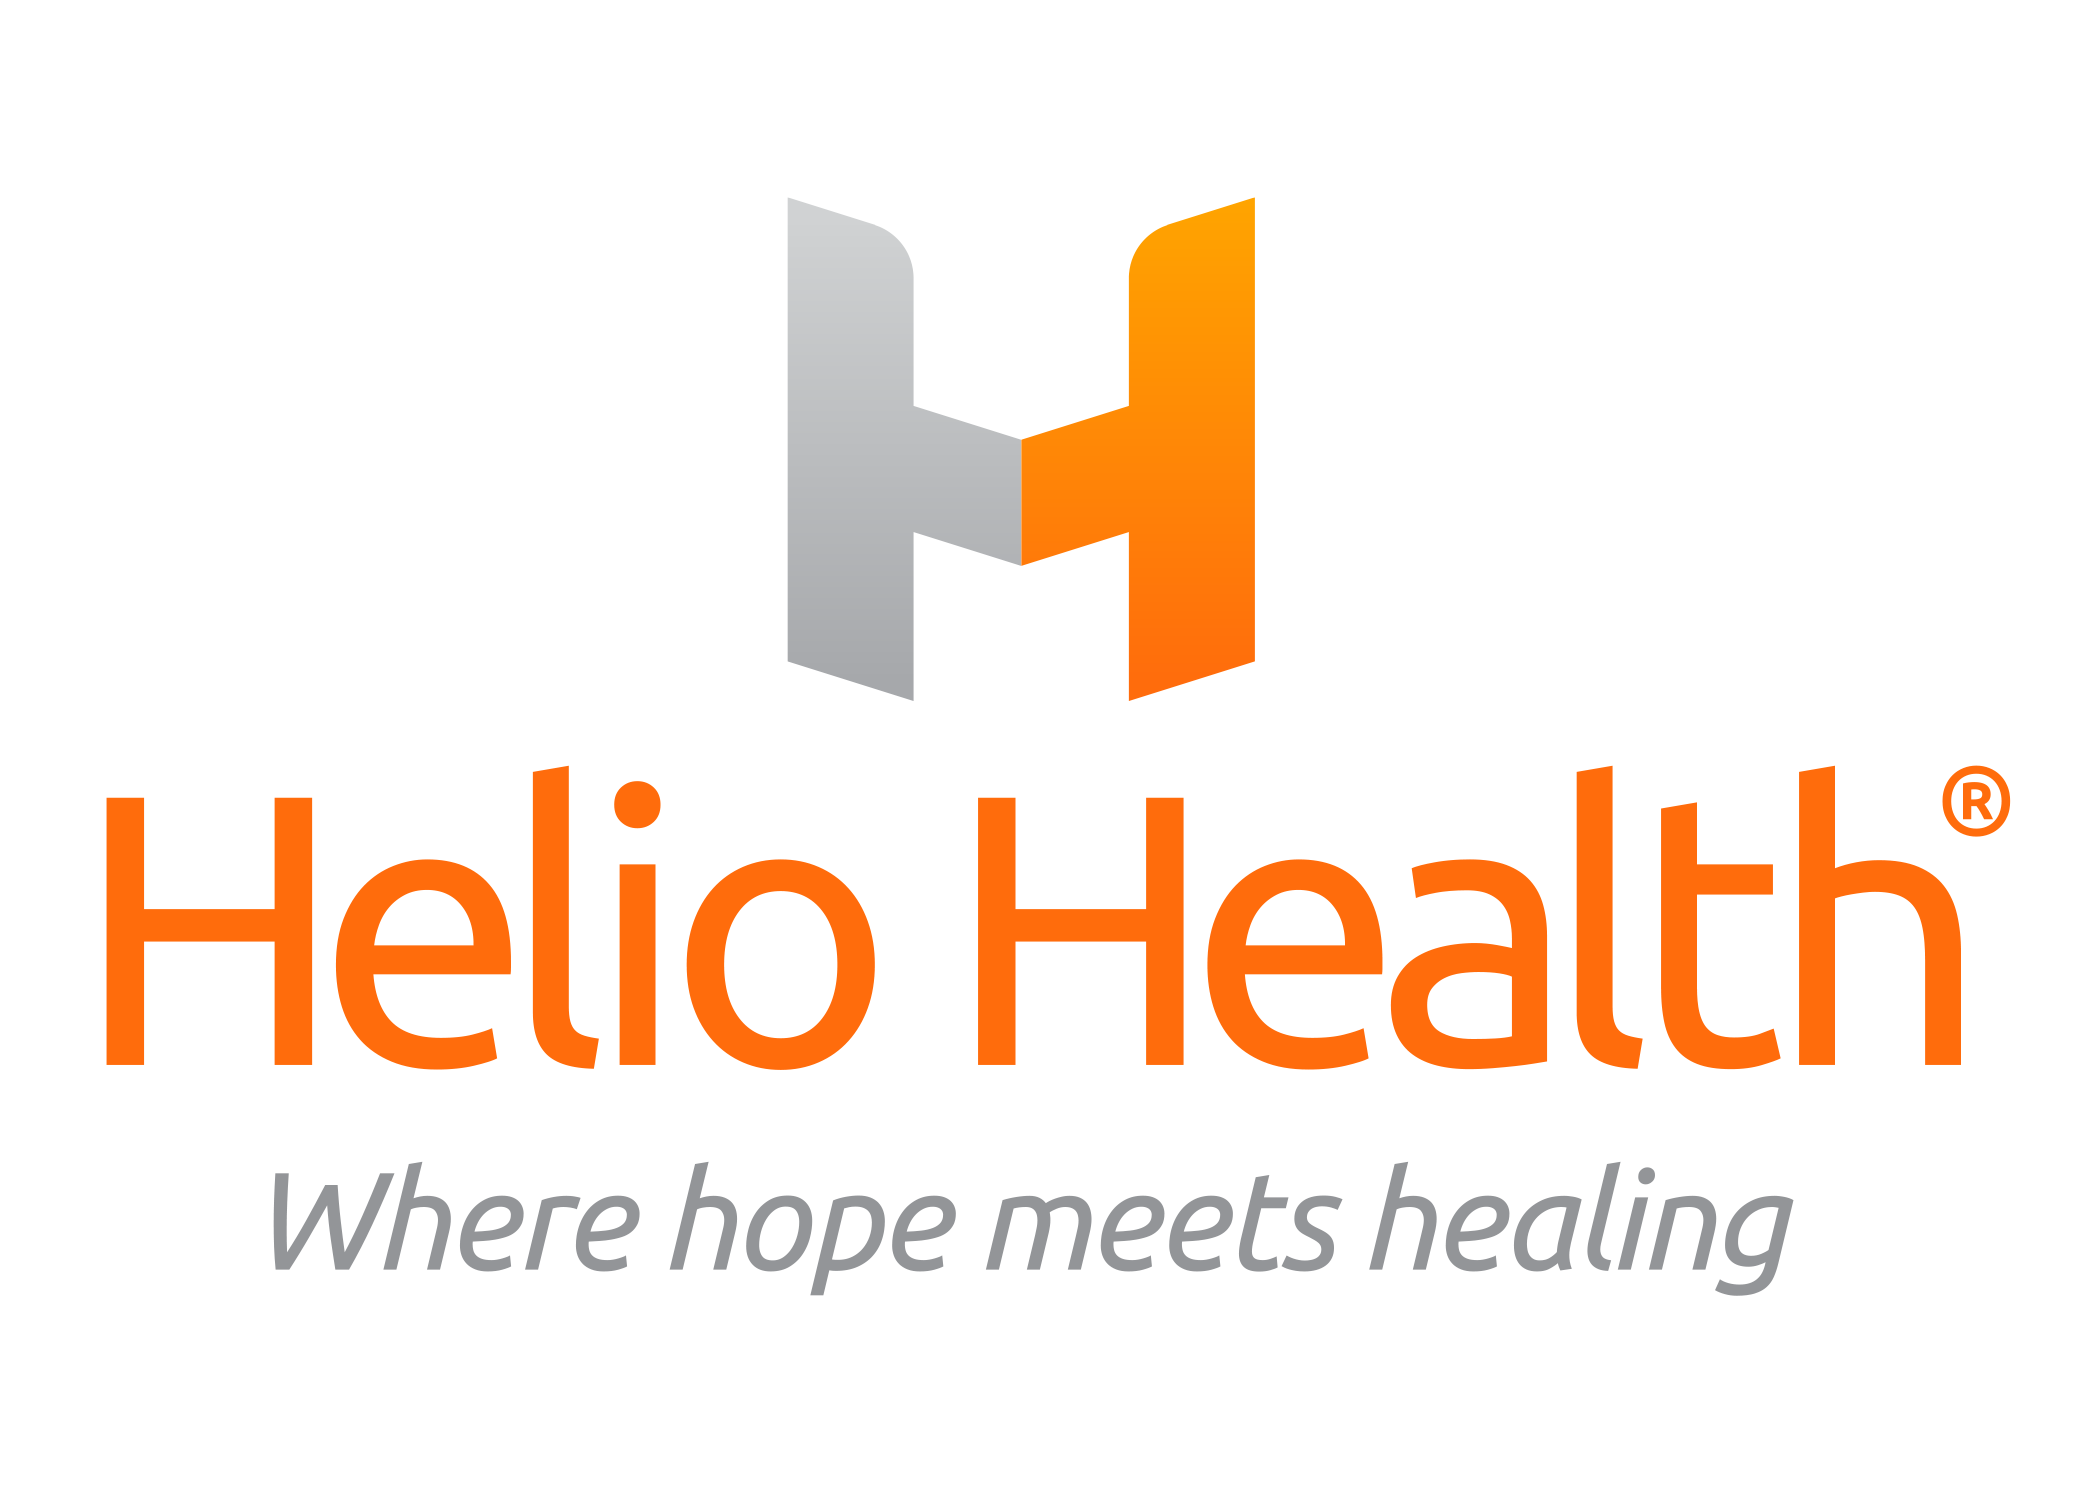 helio health where hopes meets healing